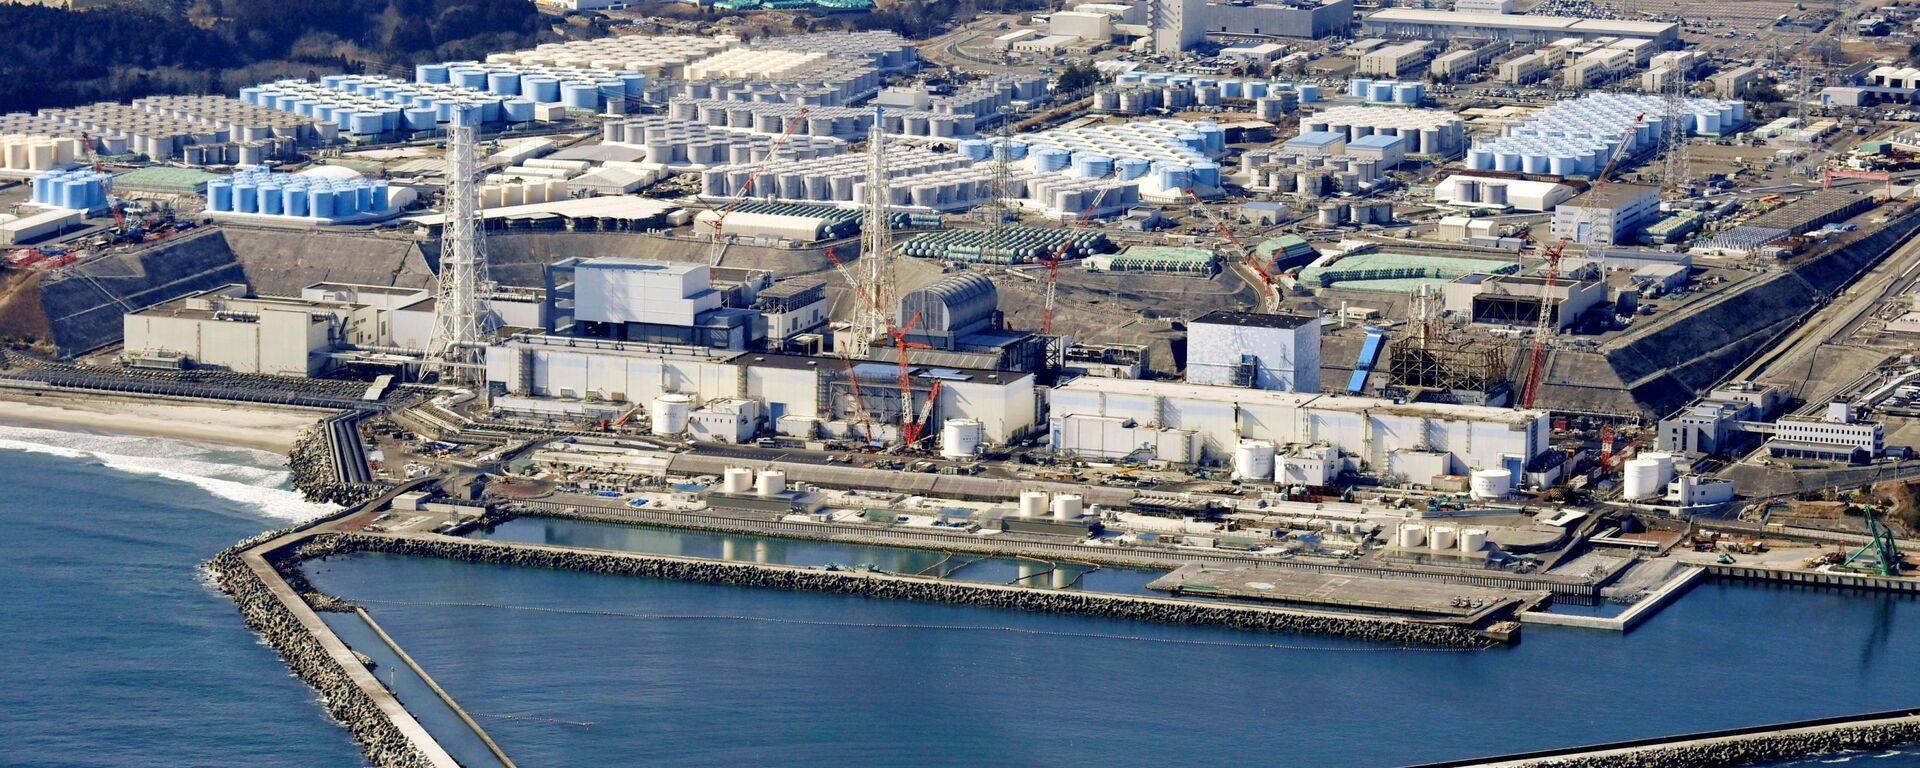 日本福岛第一核电站高放射性污染管道拆除工作再度中断